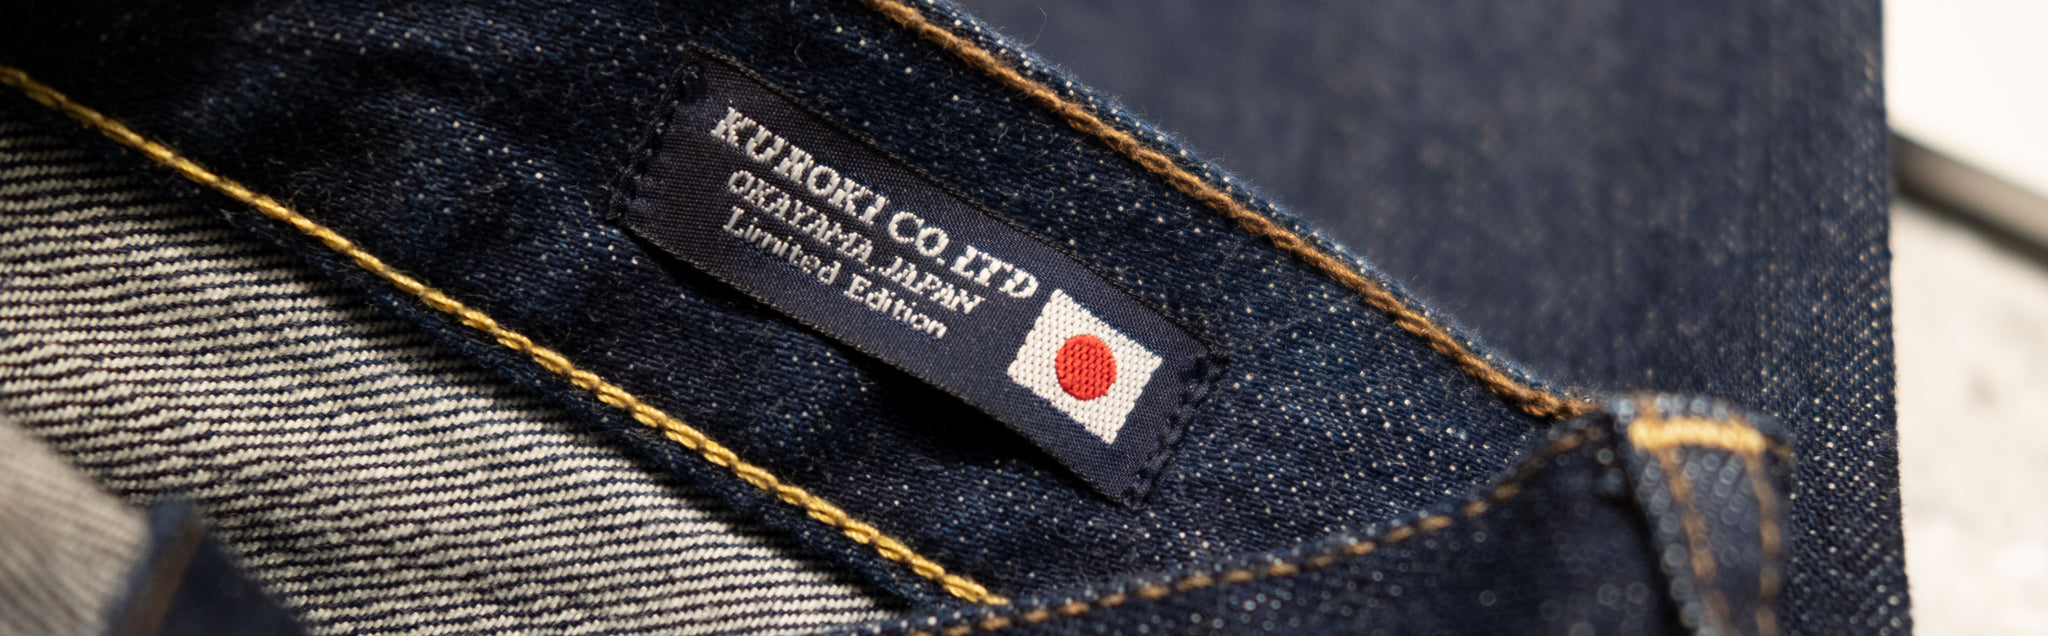 Kuroki Co. Ltd Label